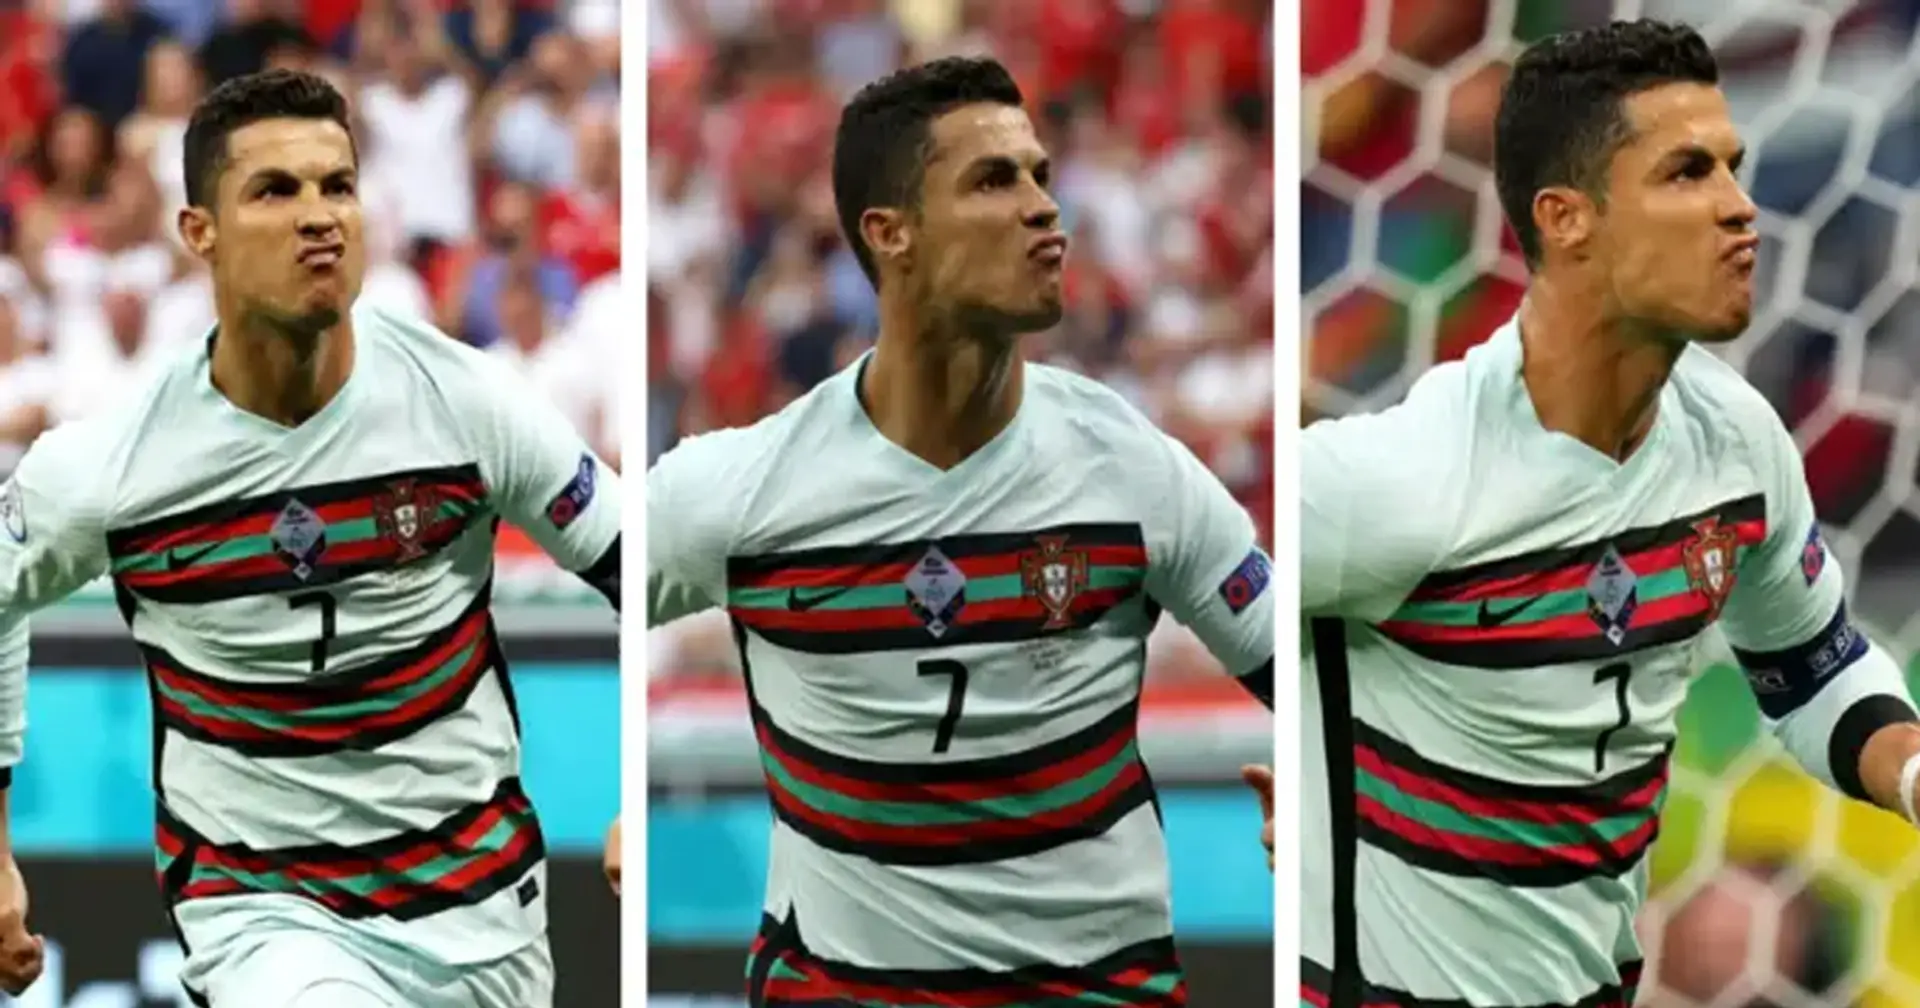 'Odiaría ser alguien que odie a Cristiano': los aficionados al fútbol reaccionan cuando Ronaldo rompe el récord de Platini en la Eurocopa